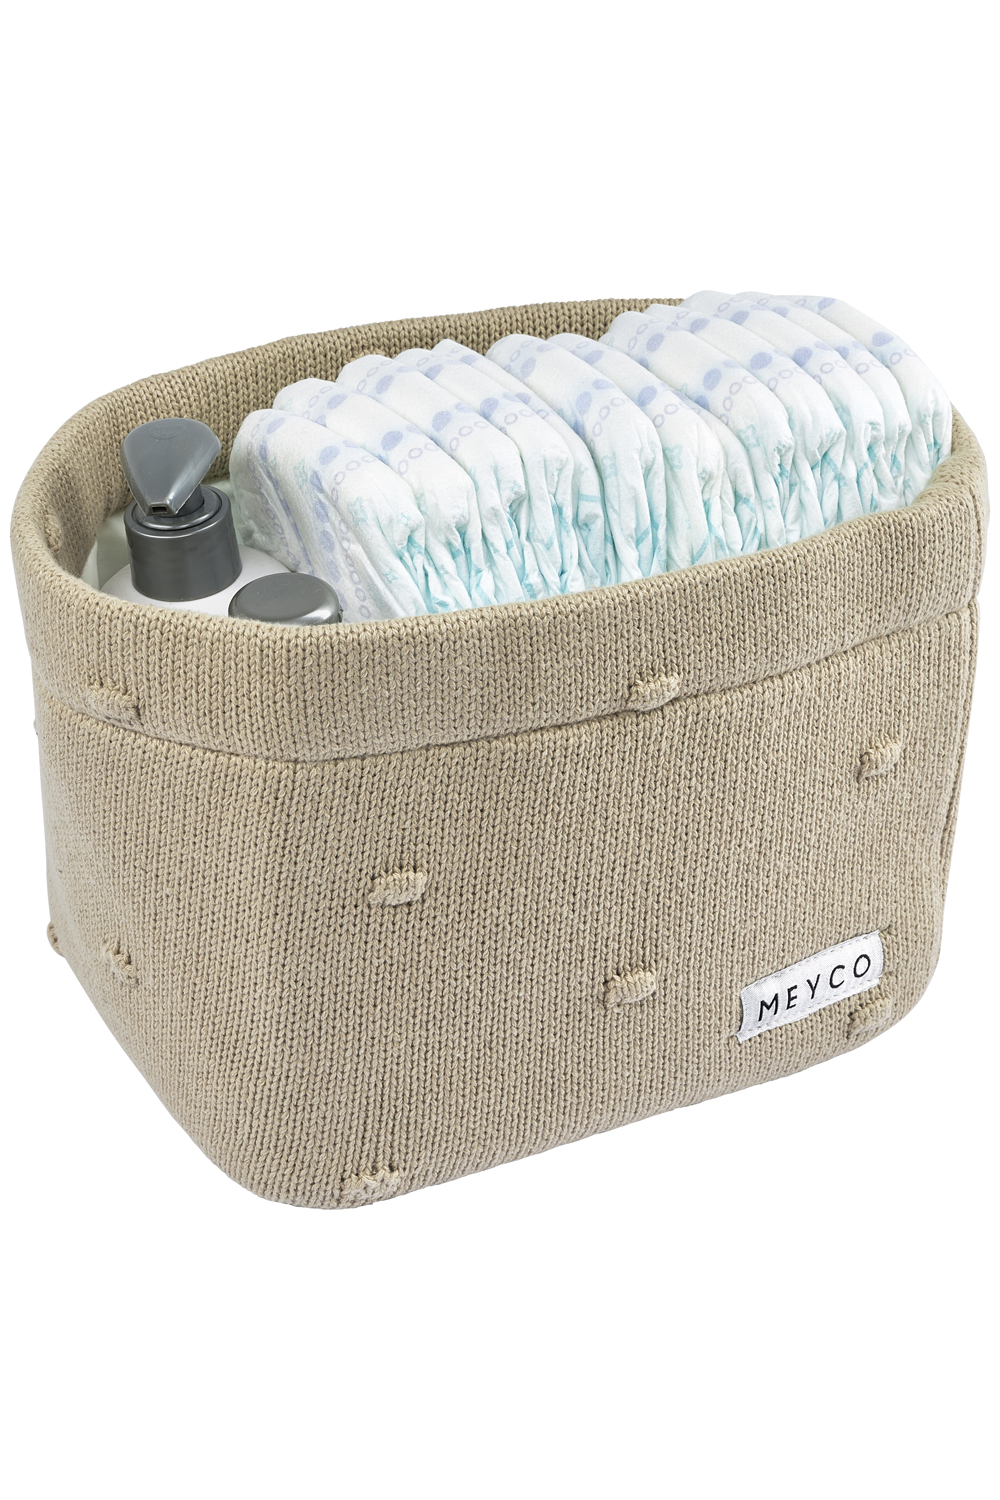 Nursery basket Mini Knots - sand - Medium